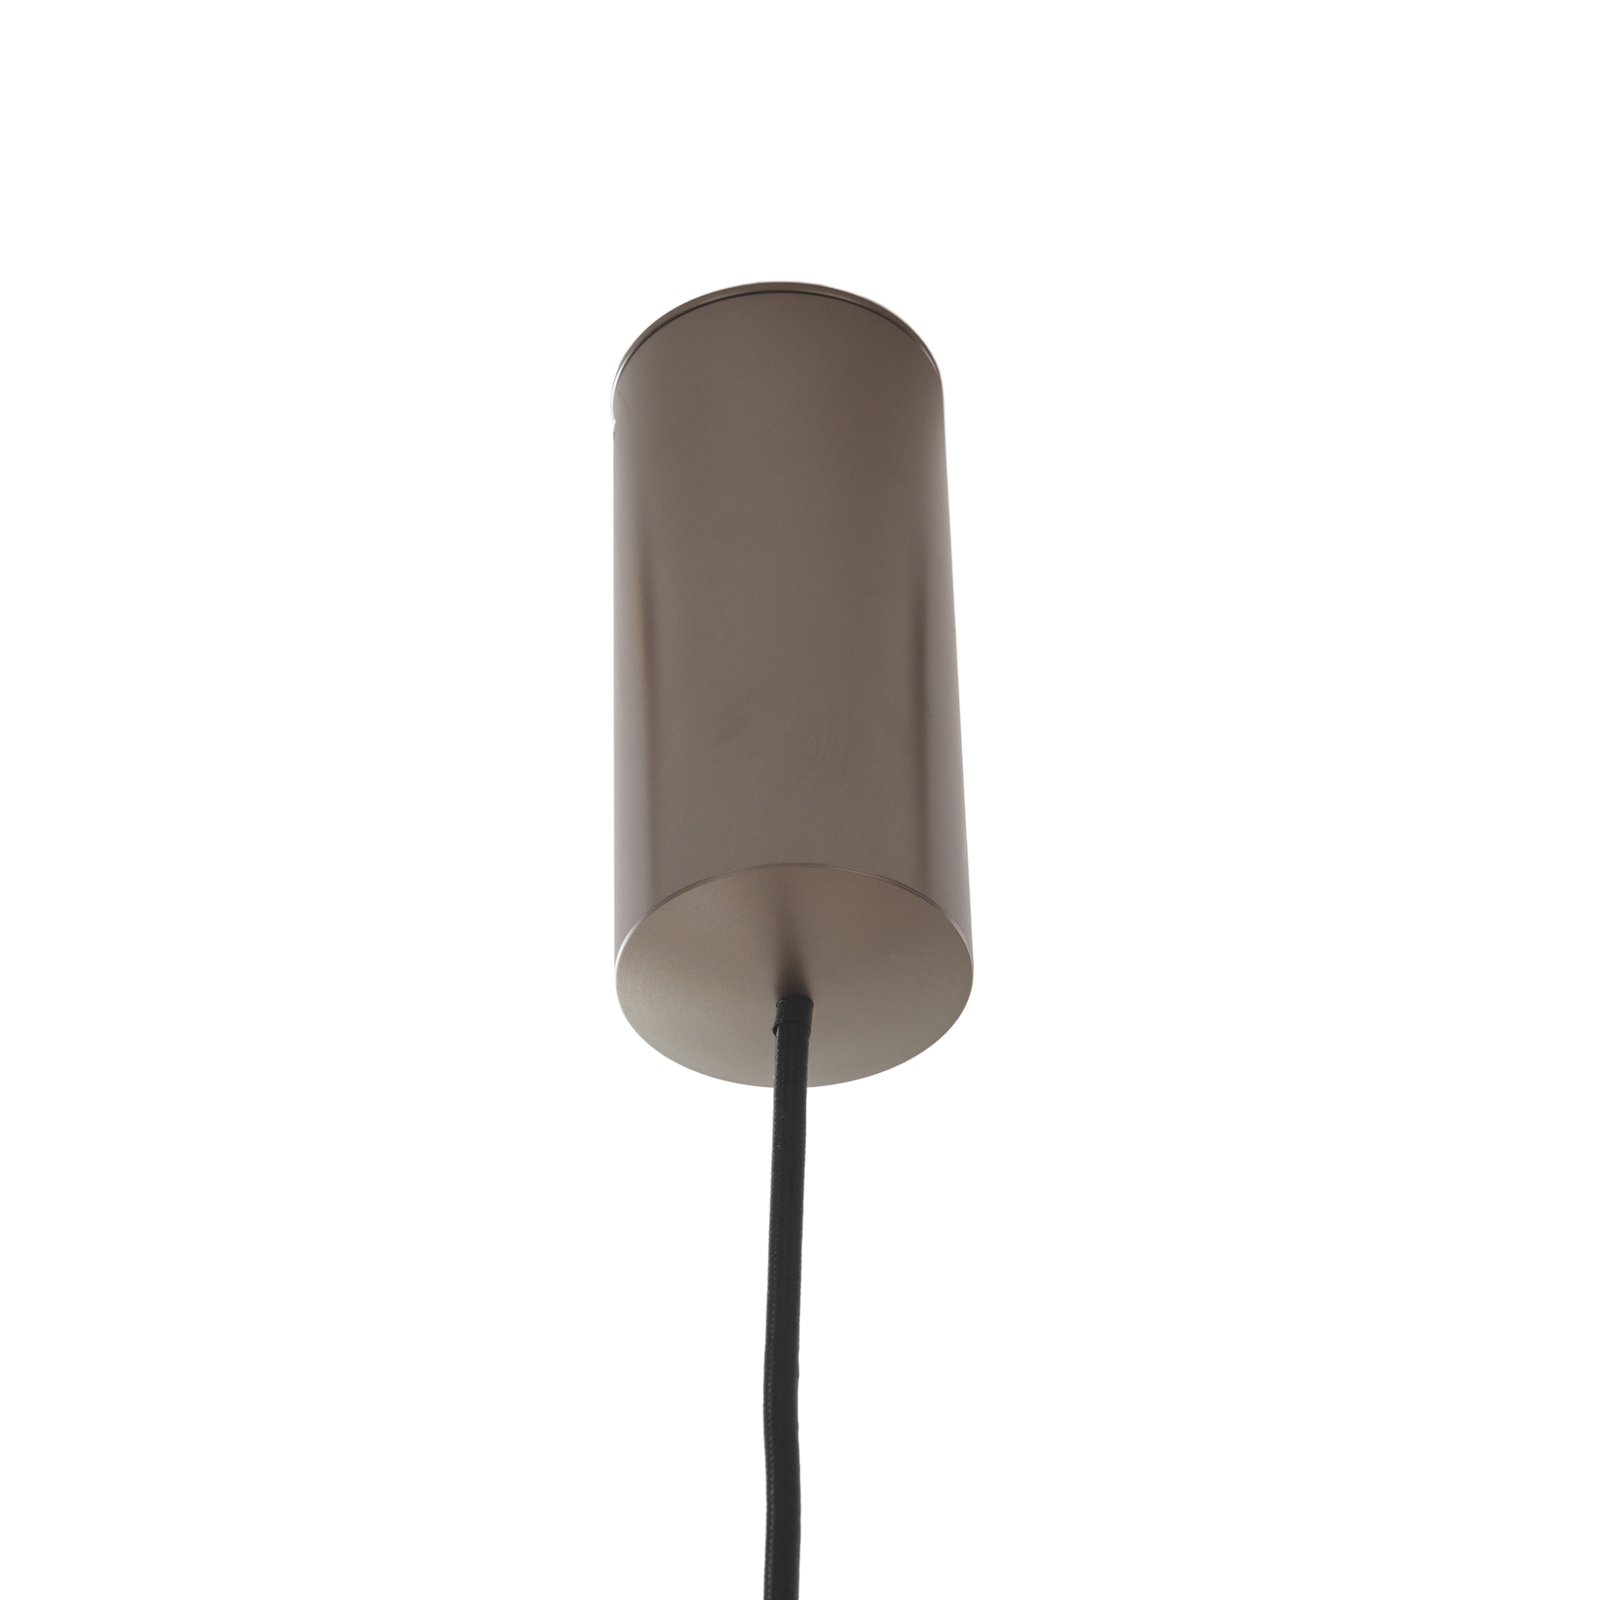 Lucande LED-es függőlámpa Plarion, nikkel színű, alumínium, Ø 9 cm